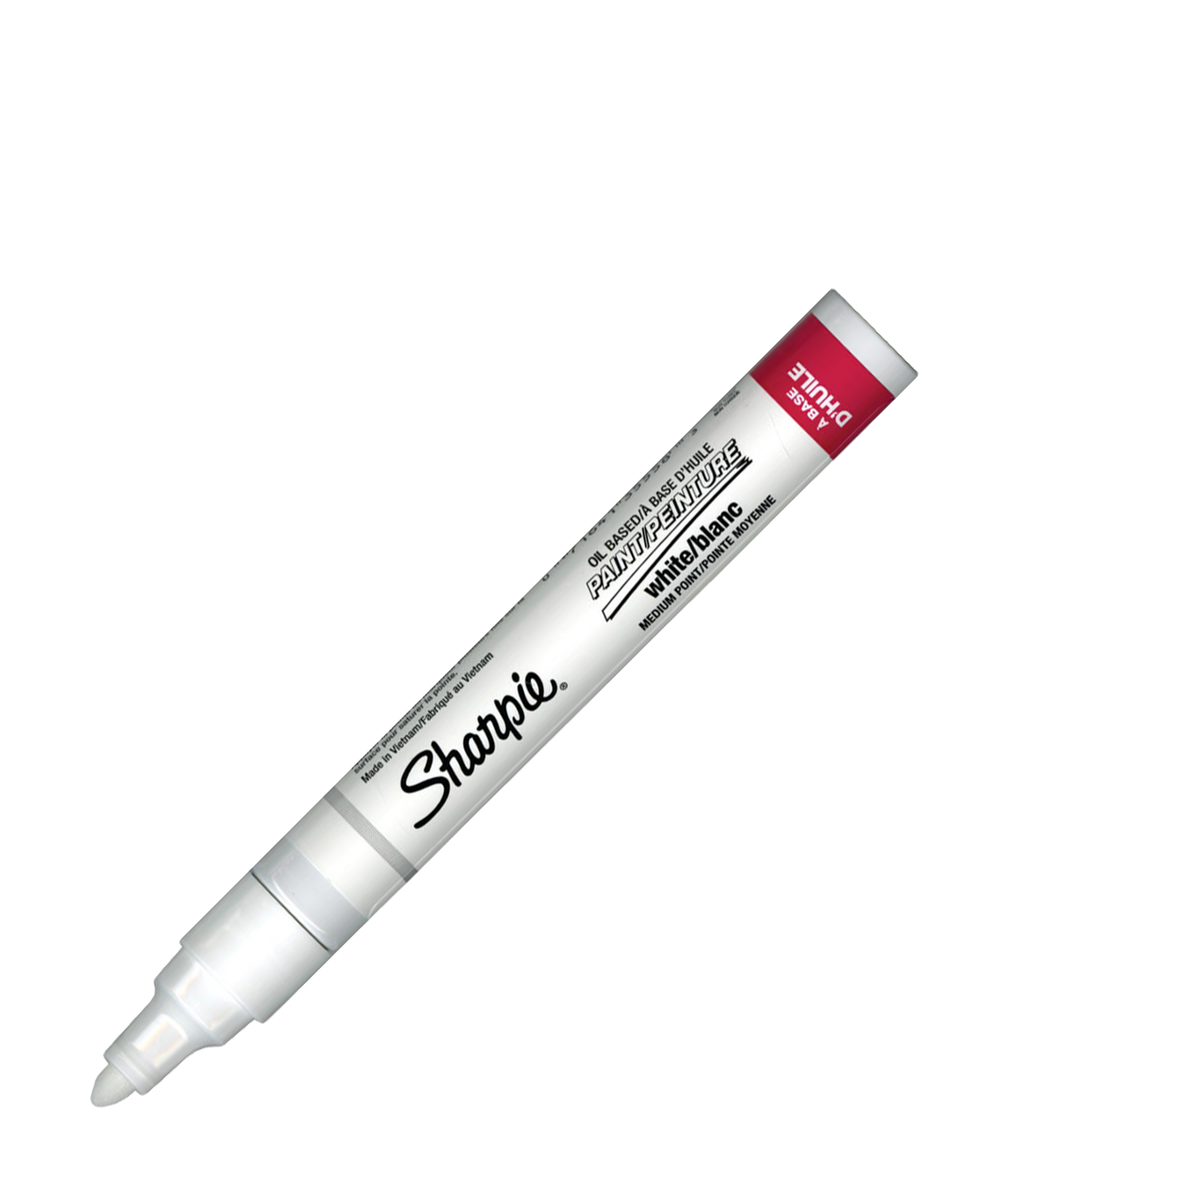 Reviews for Sharpie White Medium Point Oil-Based Paint Marker (2-Pack)